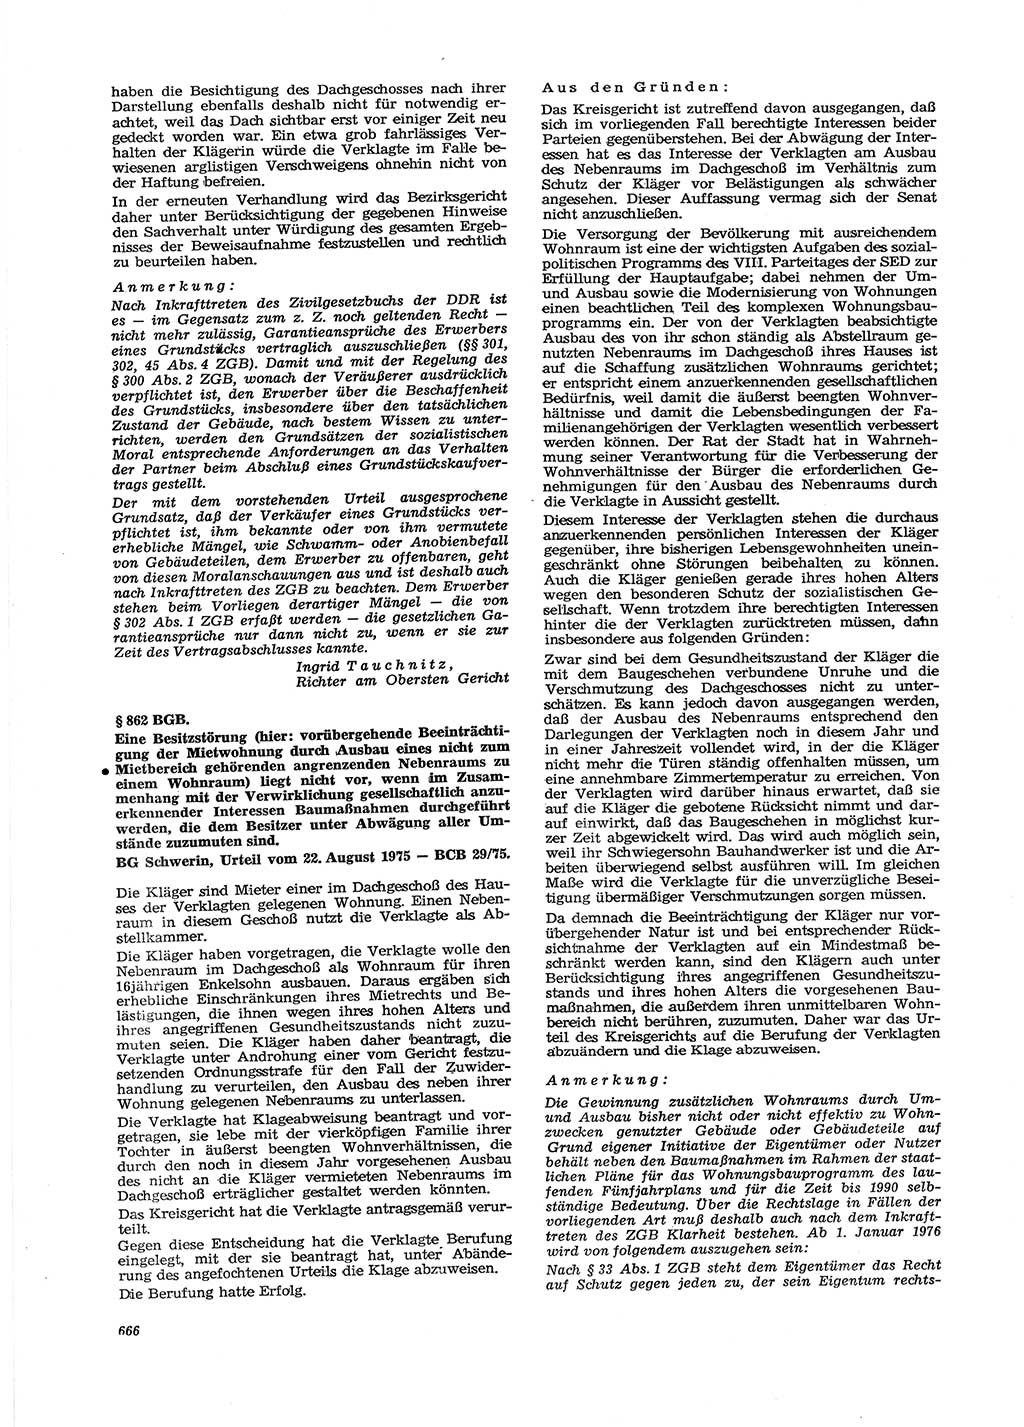 Neue Justiz (NJ), Zeitschrift für Recht und Rechtswissenschaft [Deutsche Demokratische Republik (DDR)], 29. Jahrgang 1975, Seite 666 (NJ DDR 1975, S. 666)